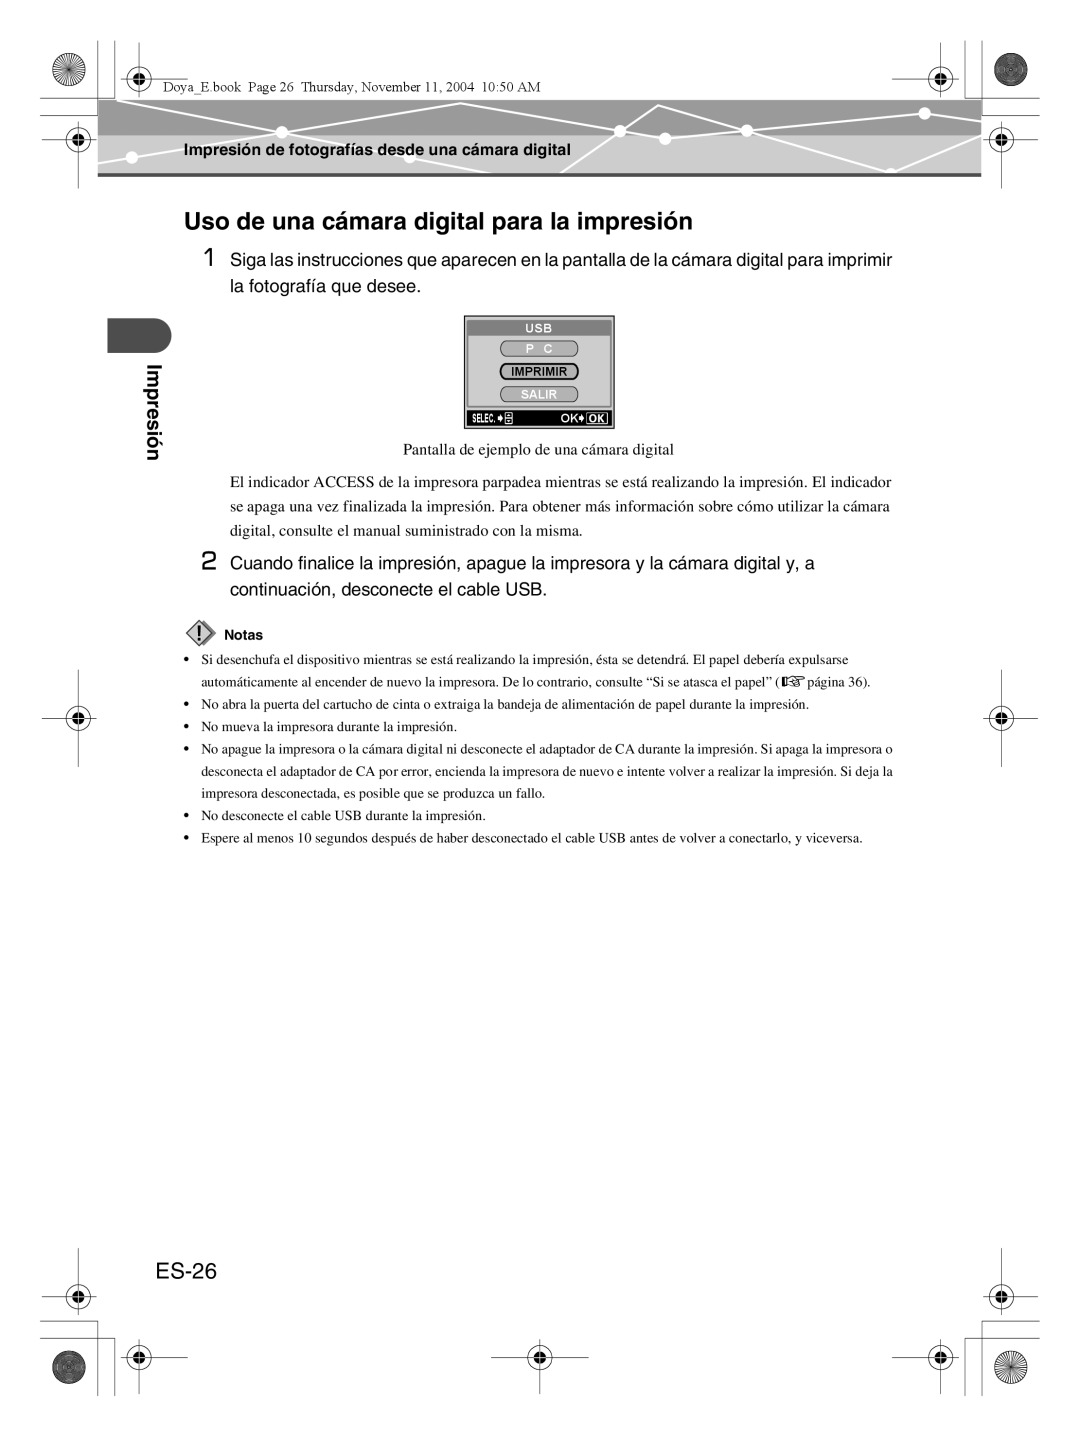 Olympus P-S100 user manual Uso de una cámara digital para la impresión, ES-26, Impresión 